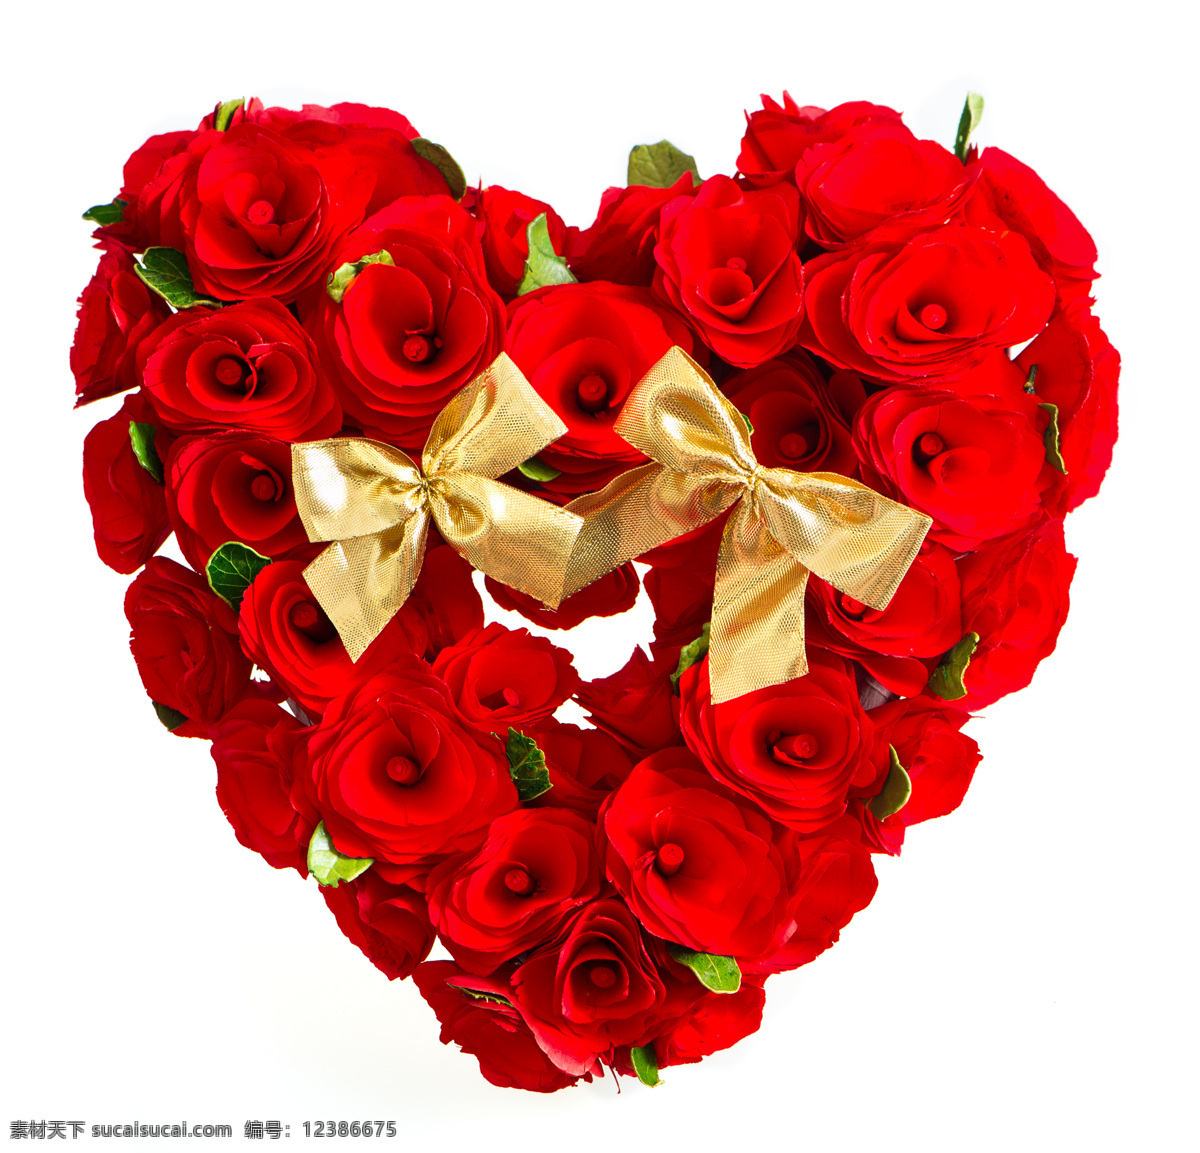 心形 玫瑰 玫瑰花 情人节 浪漫 花朵 红玫瑰 心形玫瑰 节日庆典 生活百科